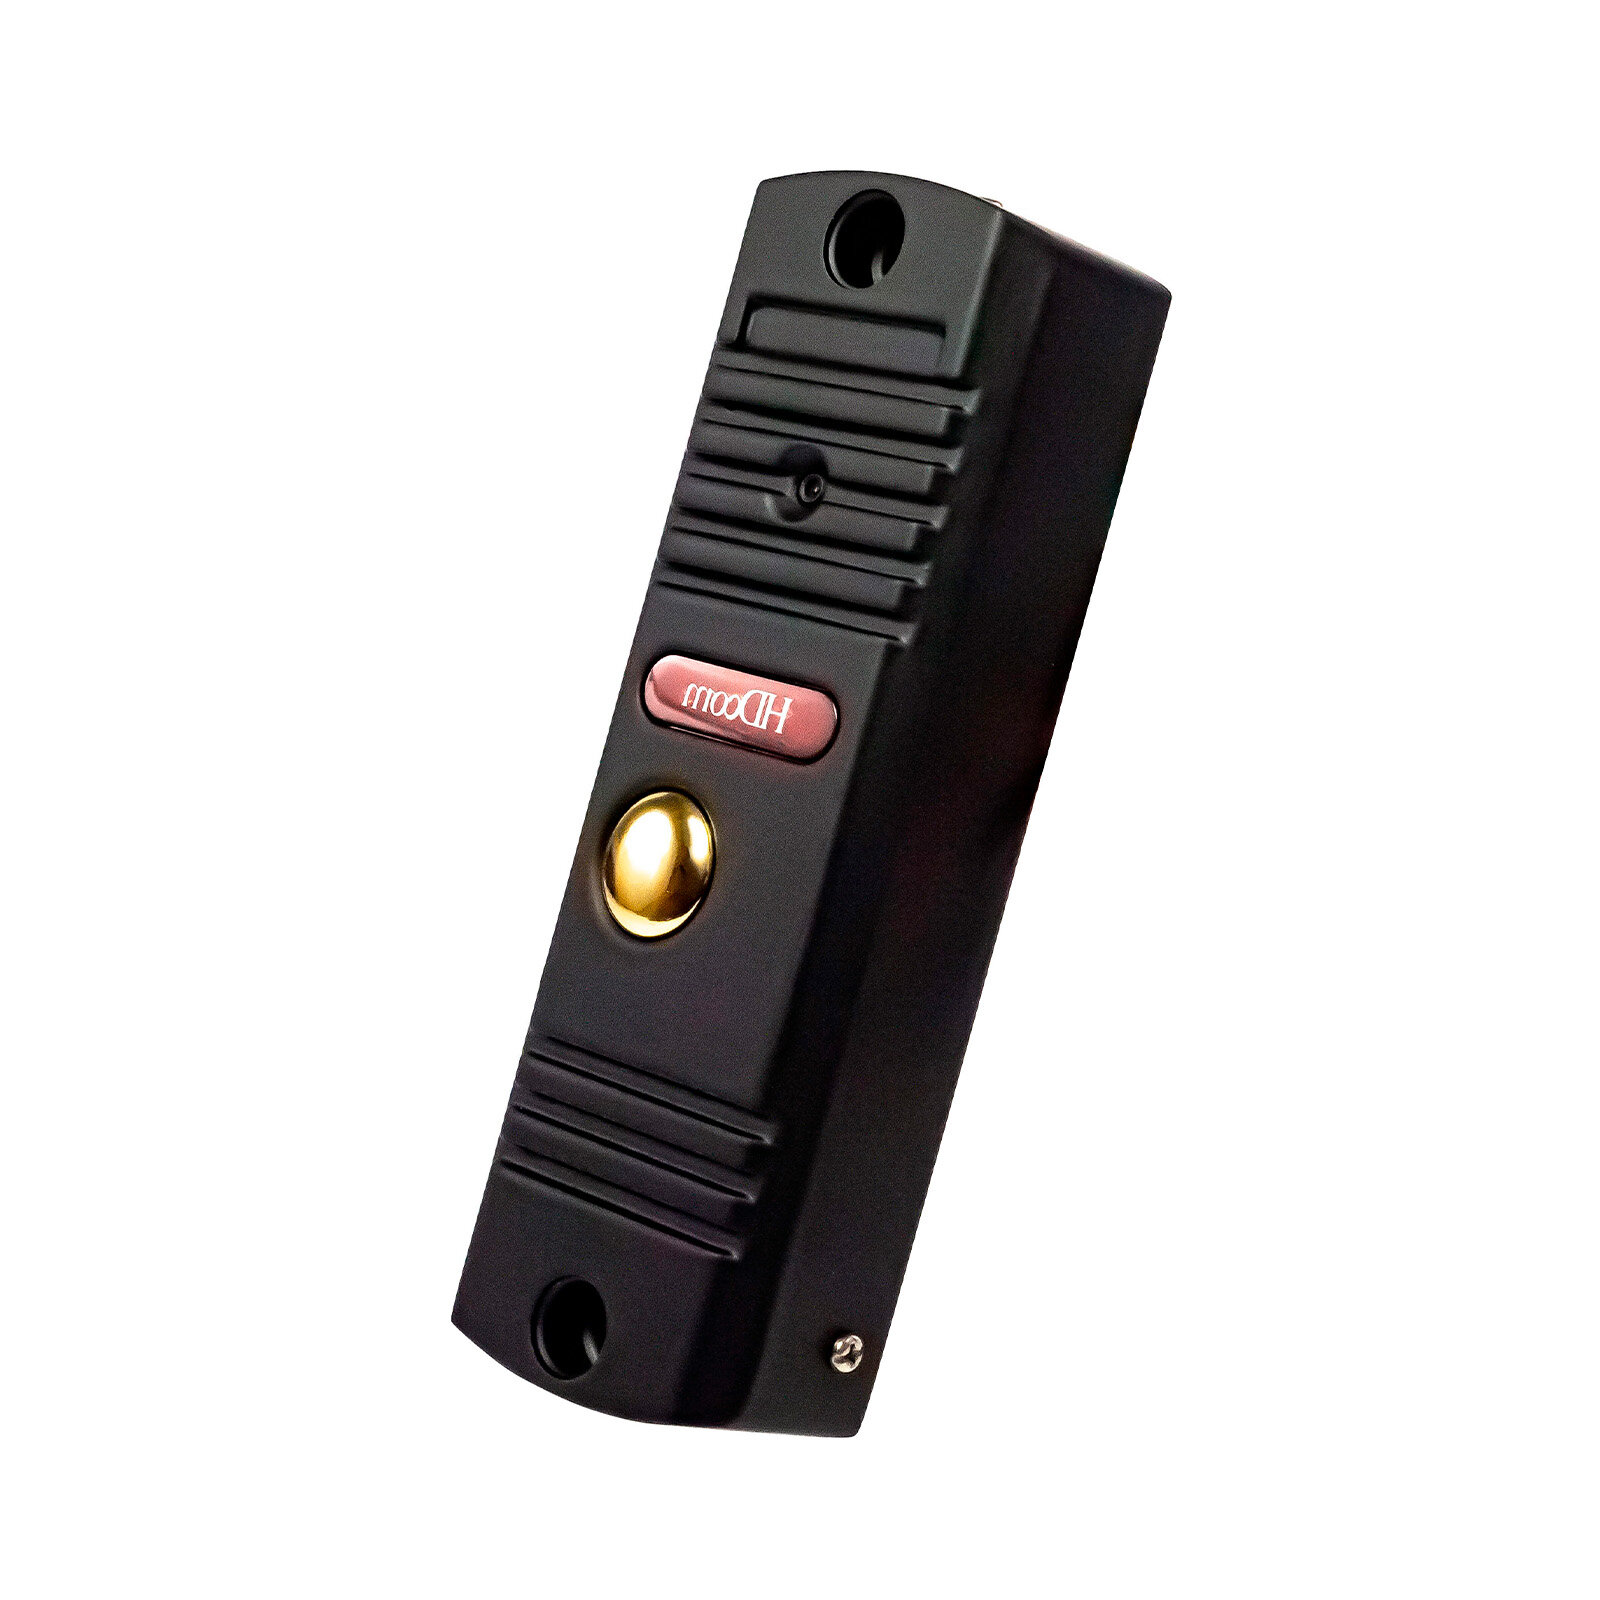 Вызывная видеопанель цветного видеодомофона 84201-EP-Mod:CP.60 (Q23125PAN). Ночная подсветка до 1,5 метров - цветная вызывная панель с камерой.